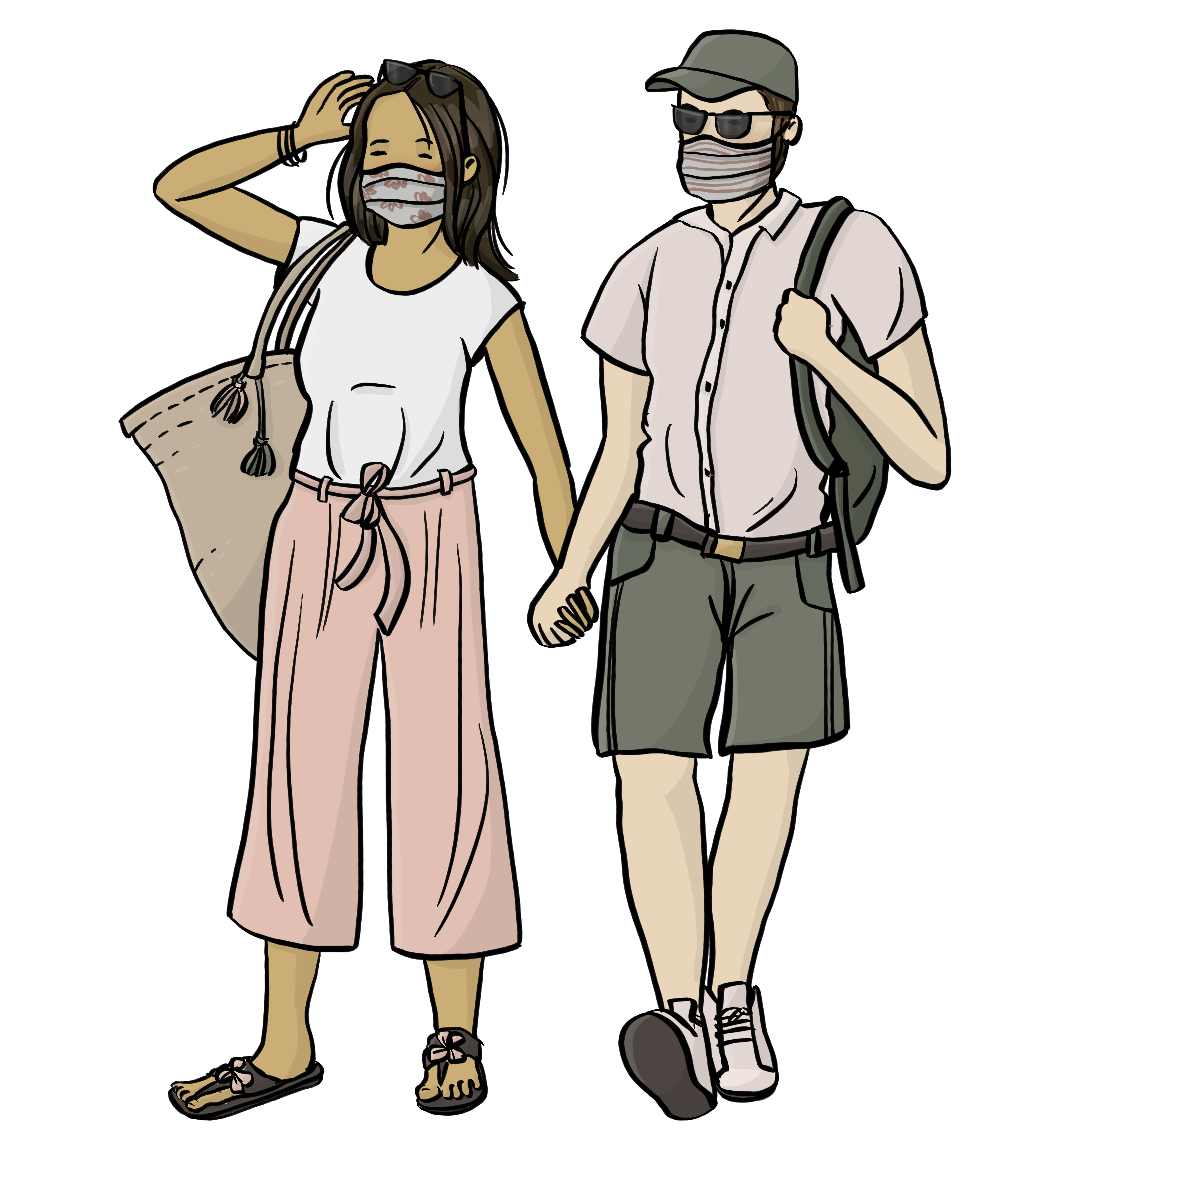 Ein Mann und eine Frau halten sich an der Hand. Sie tragen leichte Sommerkleidung. Der Mann hat eine Sonnenbrille und einen Rucksack auf, die Frau trägt eine Korbtasche. Beide tragen einen Mundschutz. 